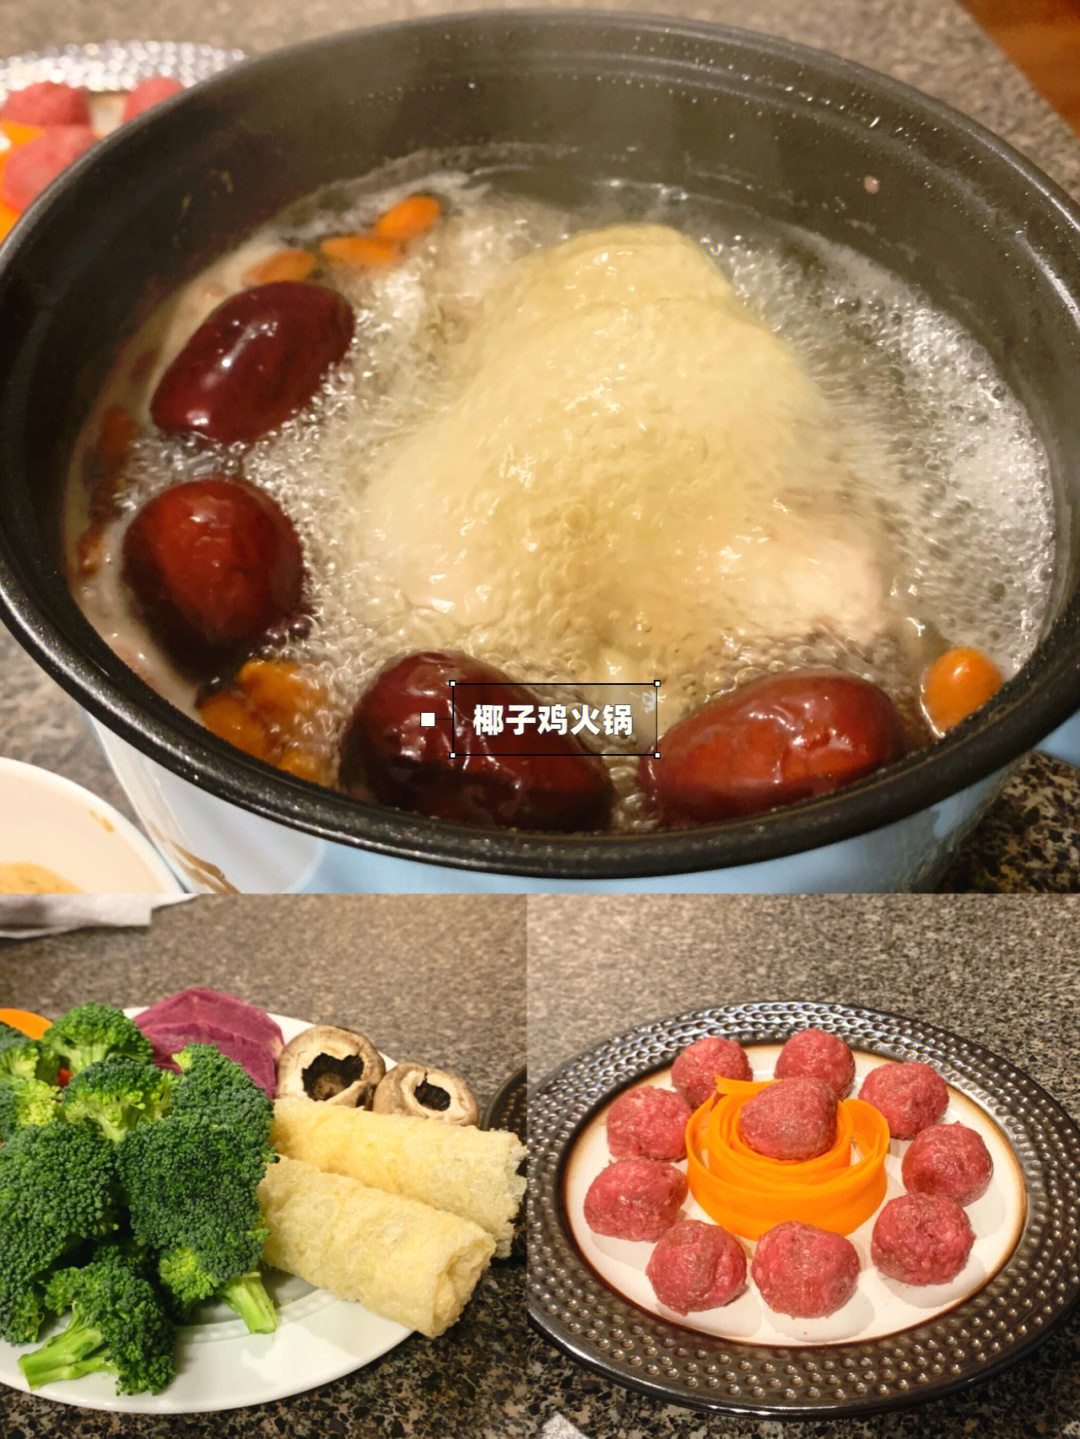 火锅滑蛋牛肉吃法图片